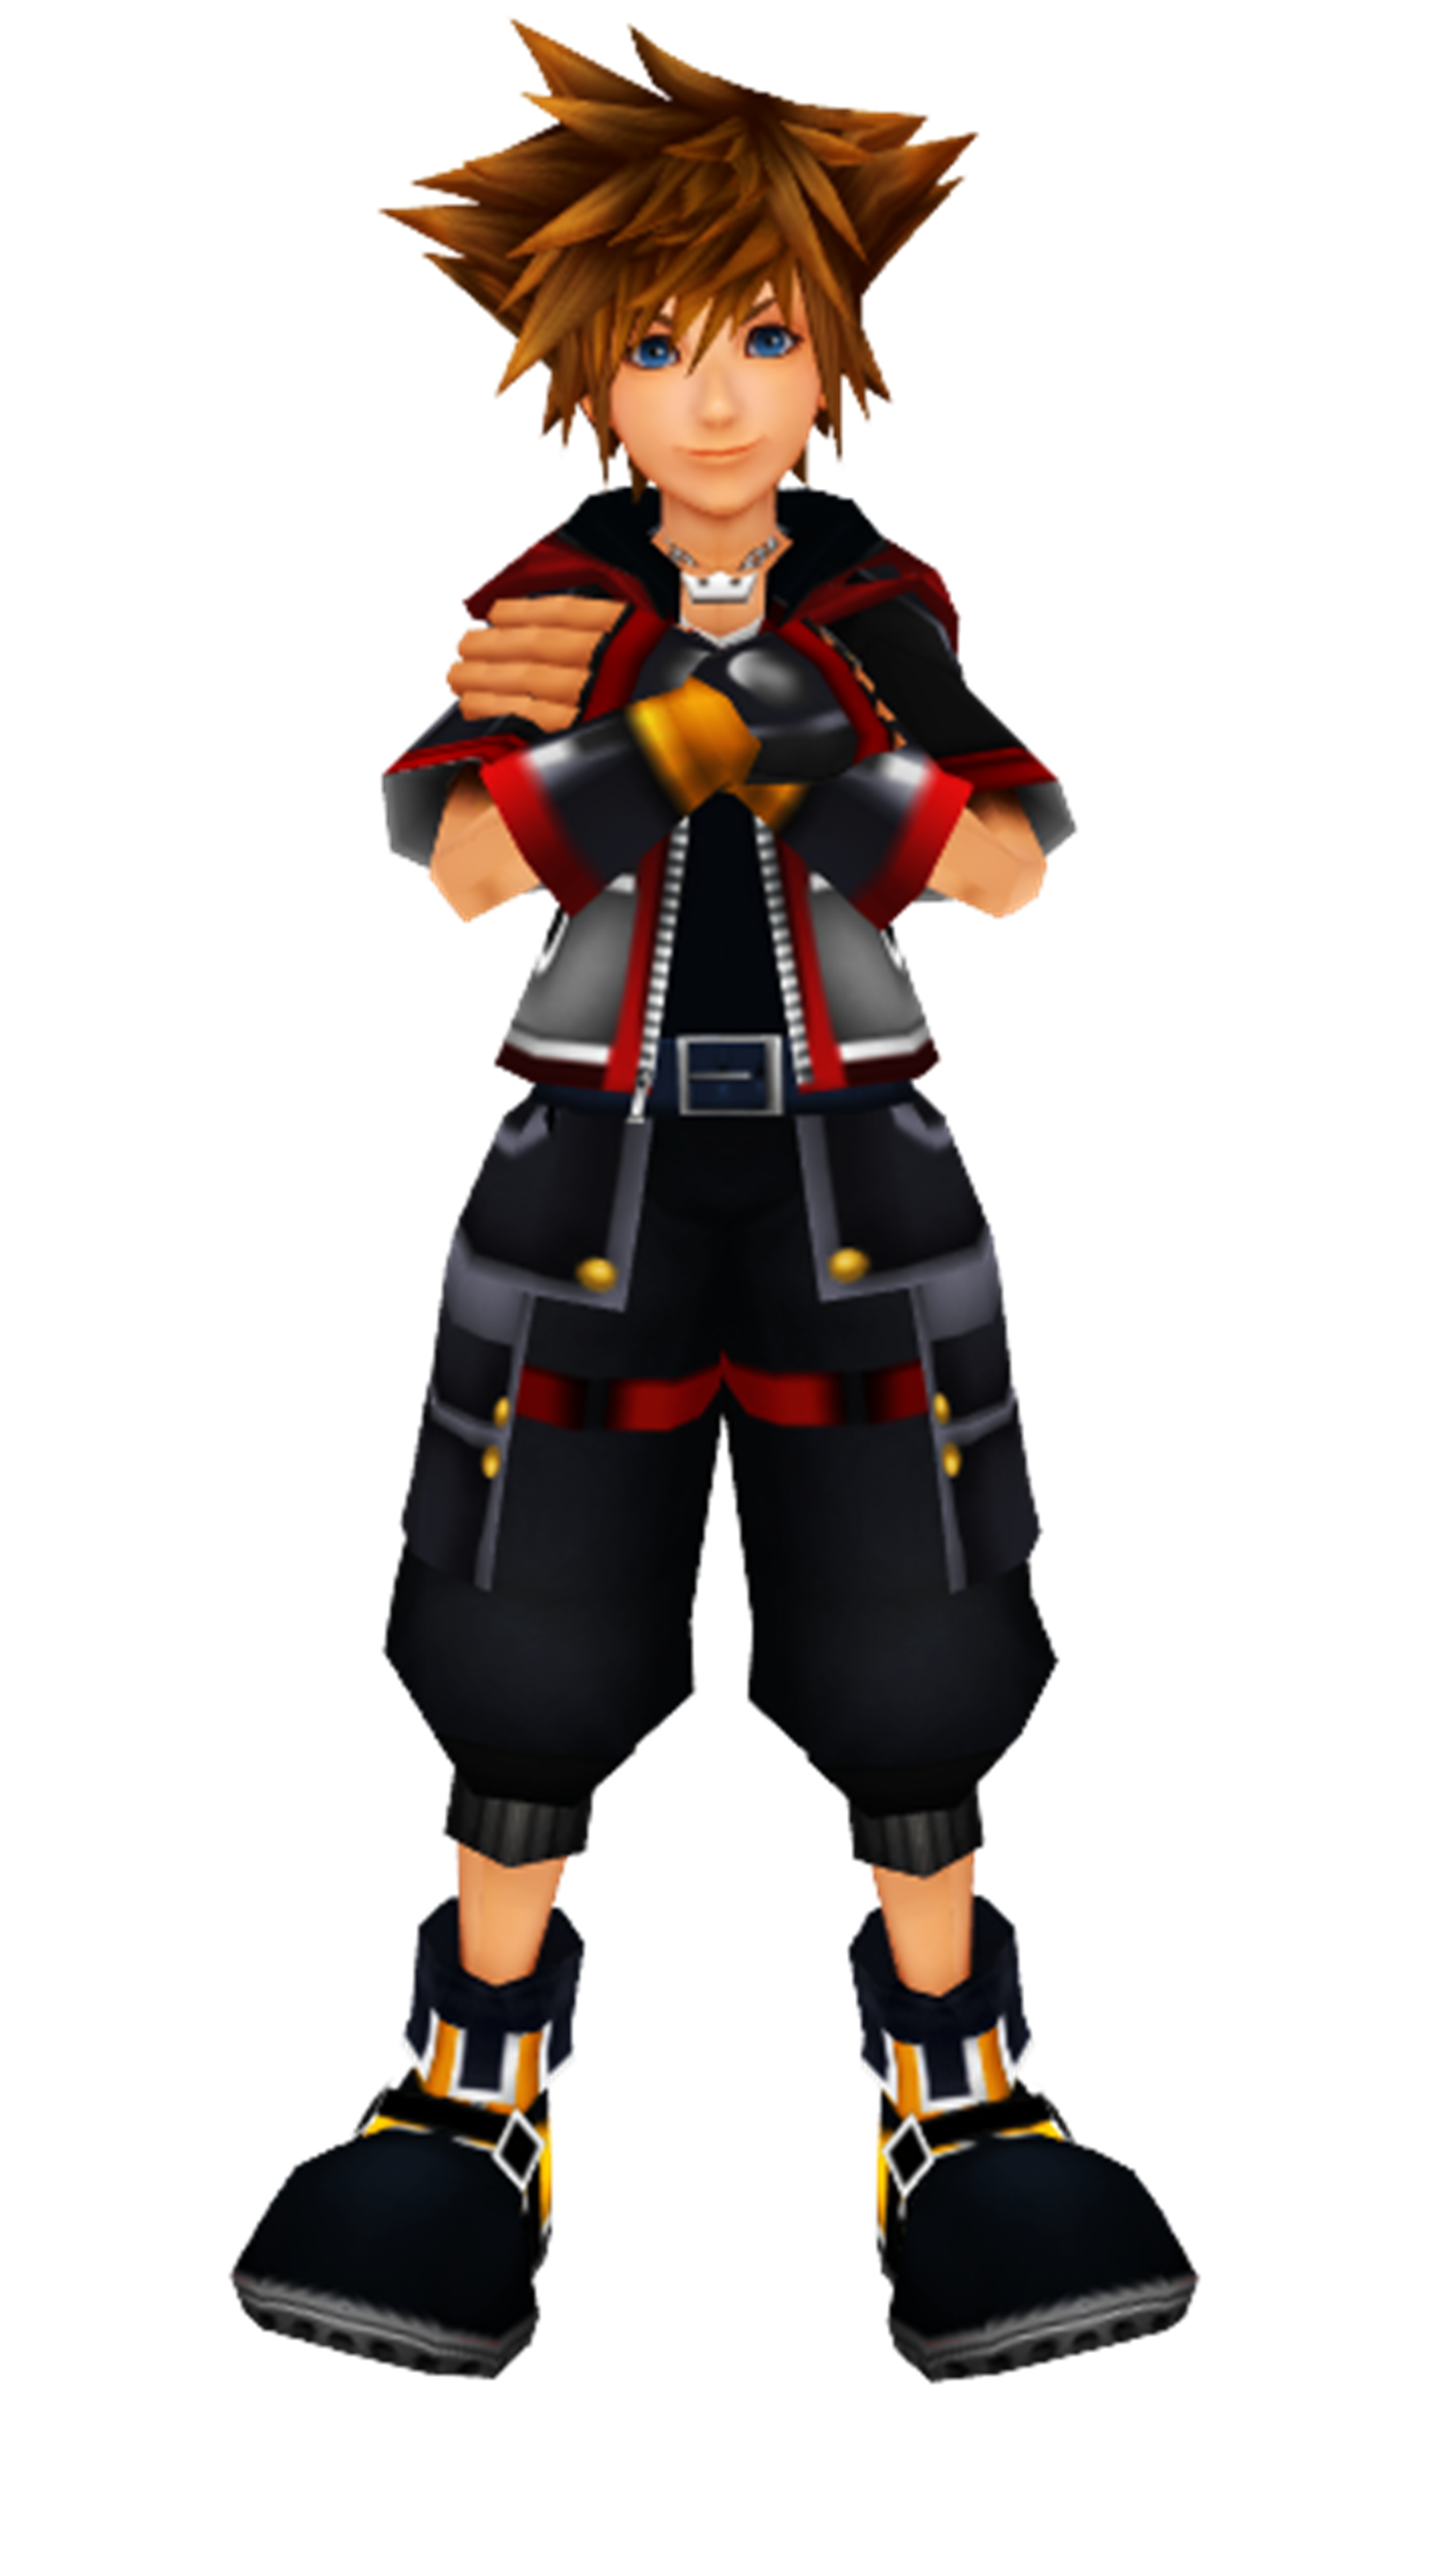 Download PNG image - Kingdom Hearts Sora PNG Background Image 